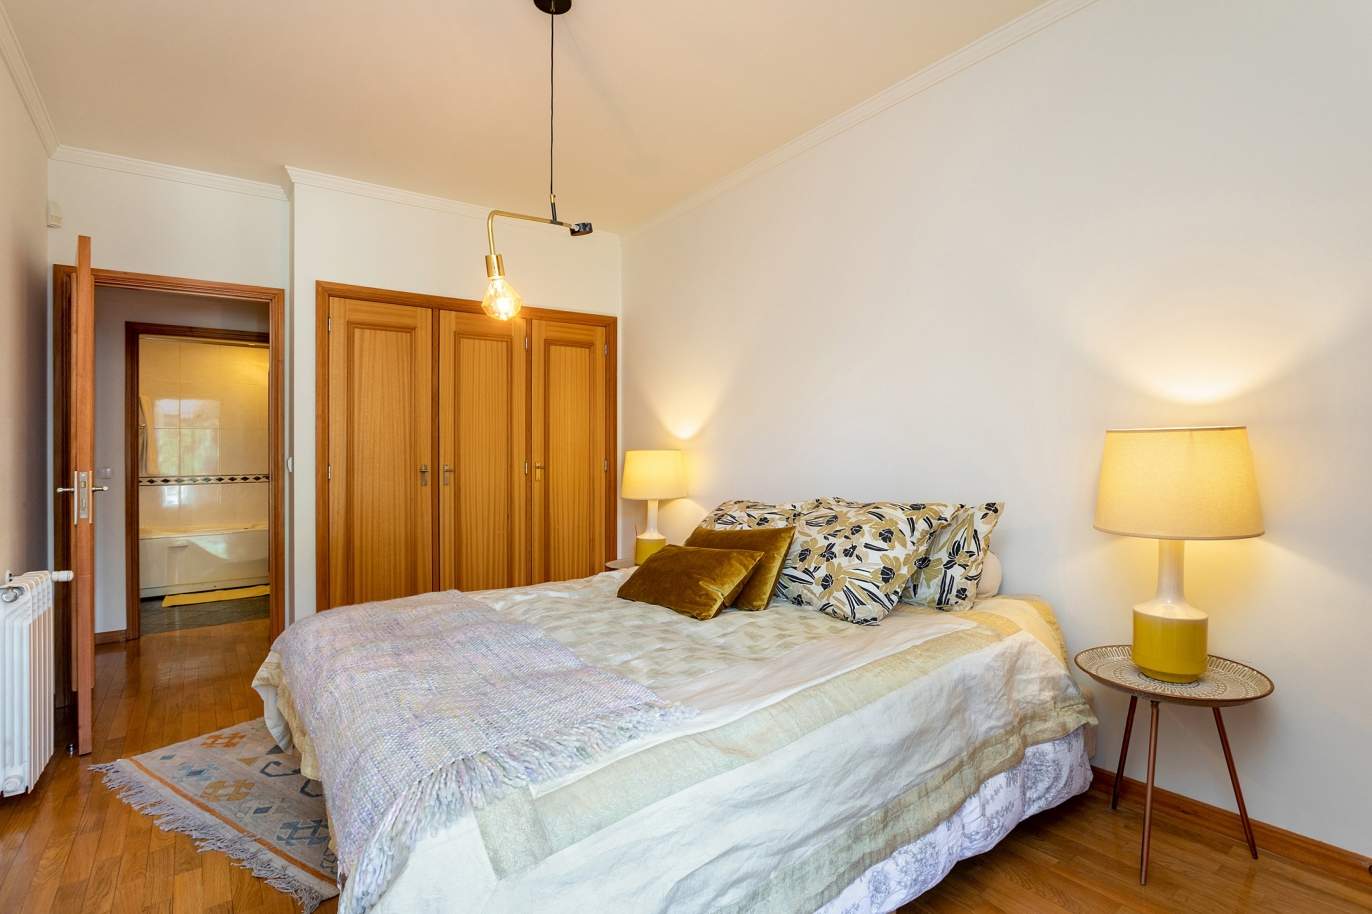 Verkauf: Wohnung mit Balkon und Meerblick, in Canidelo, V. N. Gaia, Portugal_174646